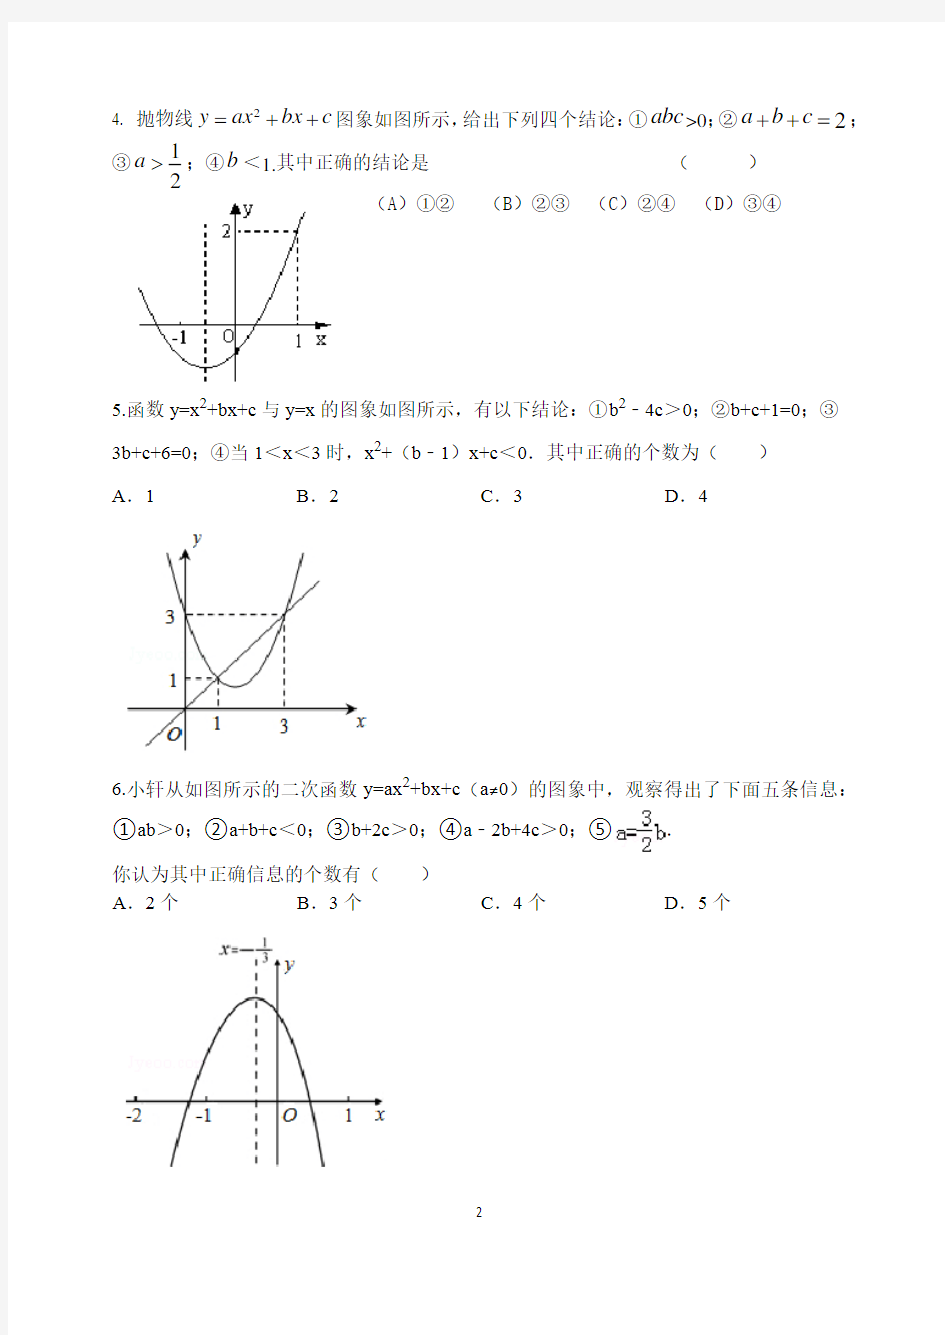 二次函数a,b,c 的符号判断问题